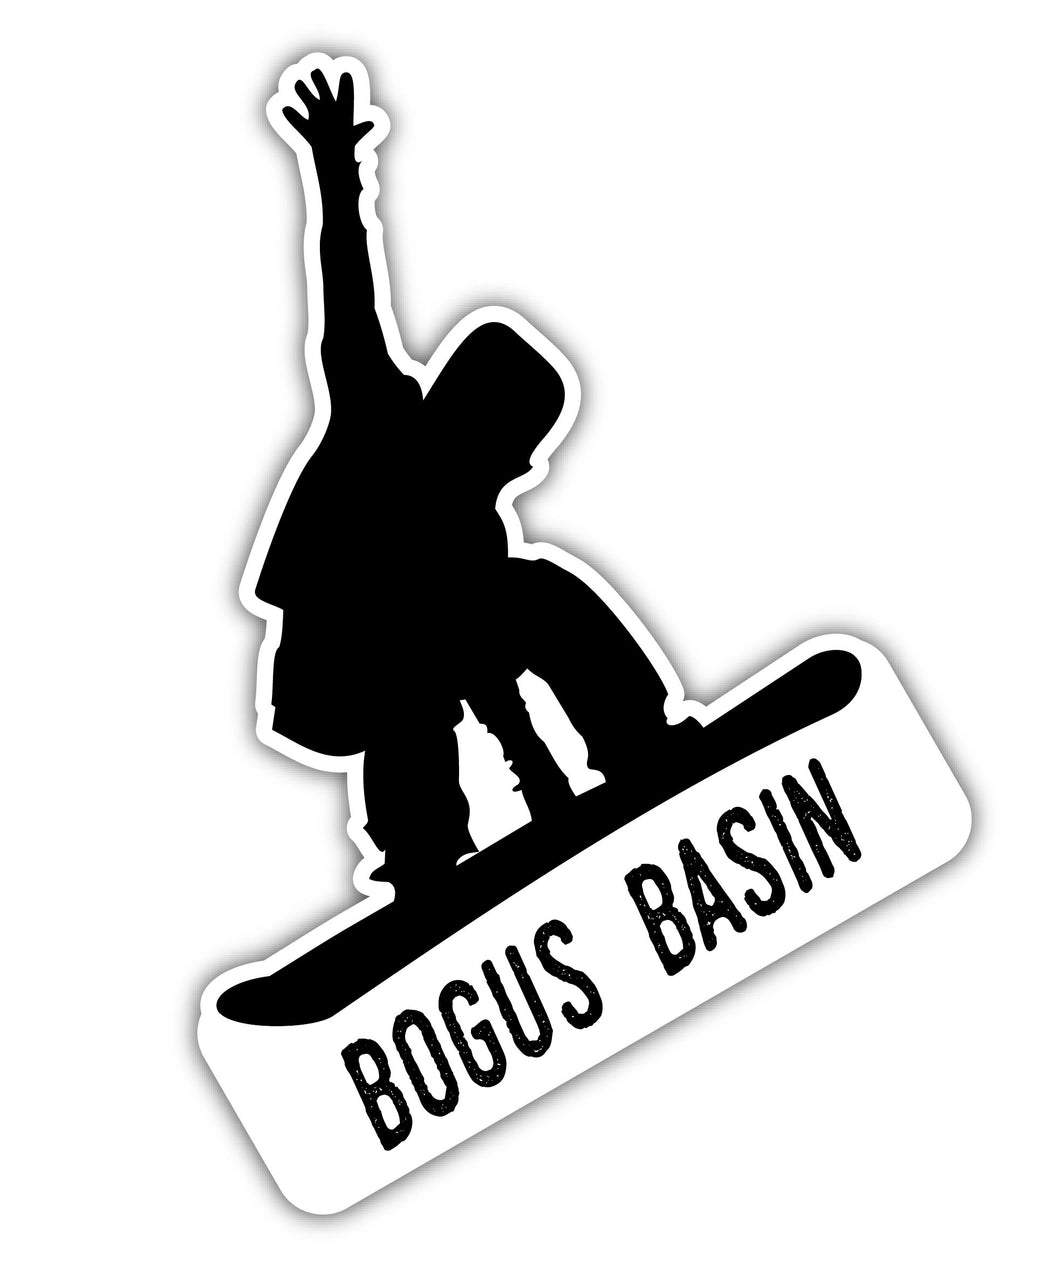 Bogus Basin Idaho Ski Adventures Souvenir 4 Inch Vinyl Decal Sticker Mountain Design